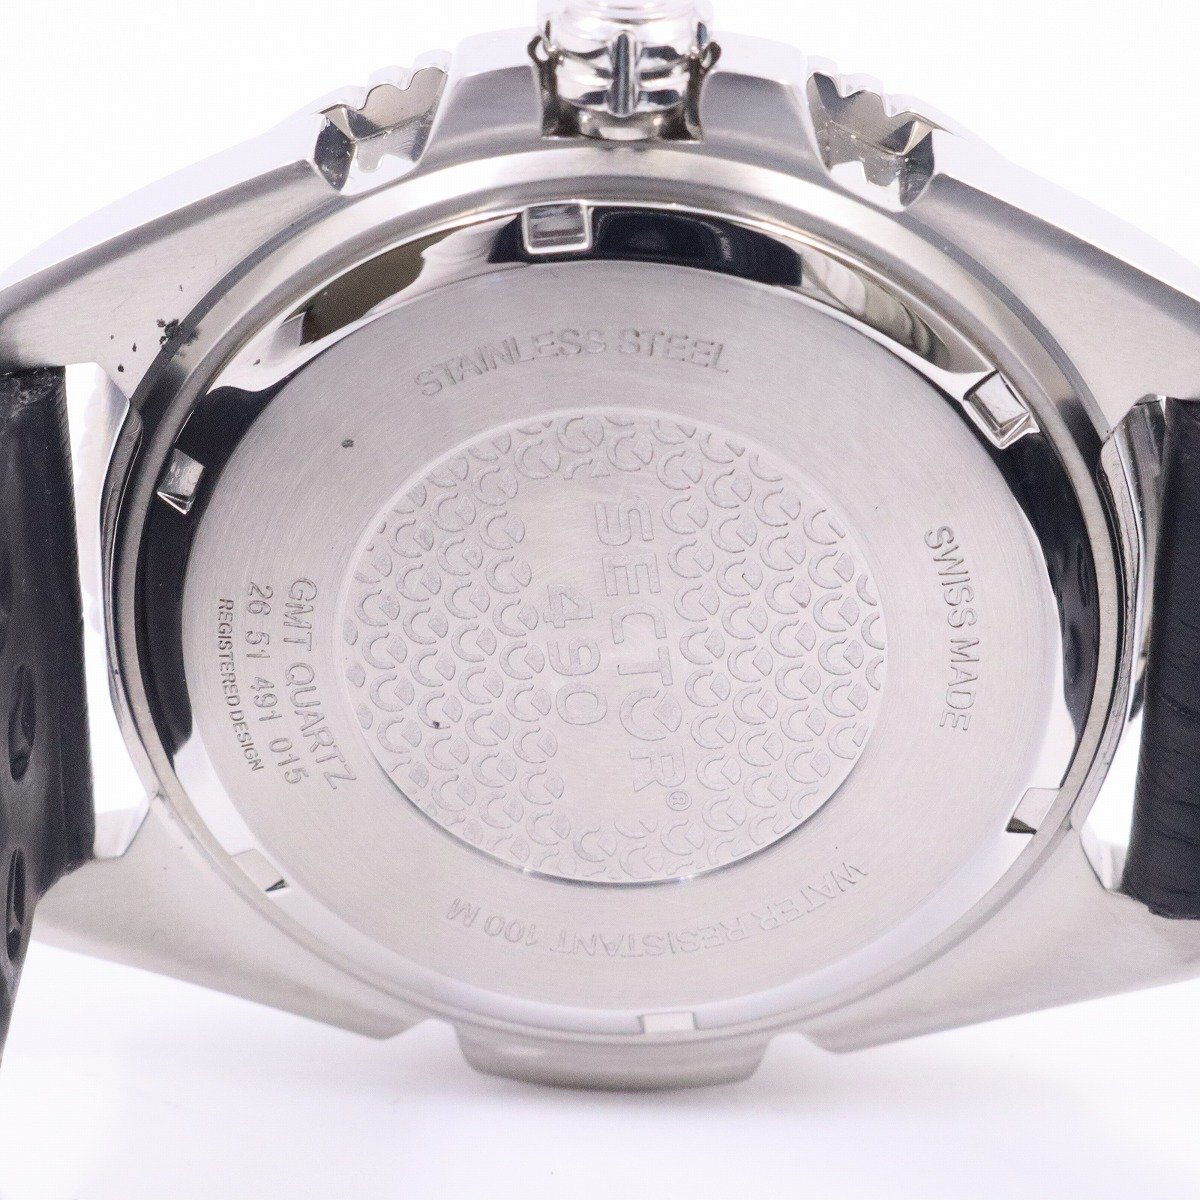 SECTOR Sector GMT кварц мужские наручные часы белый циферблат оригинальный кожа ремень 26 51 491 015[... ломбард ]